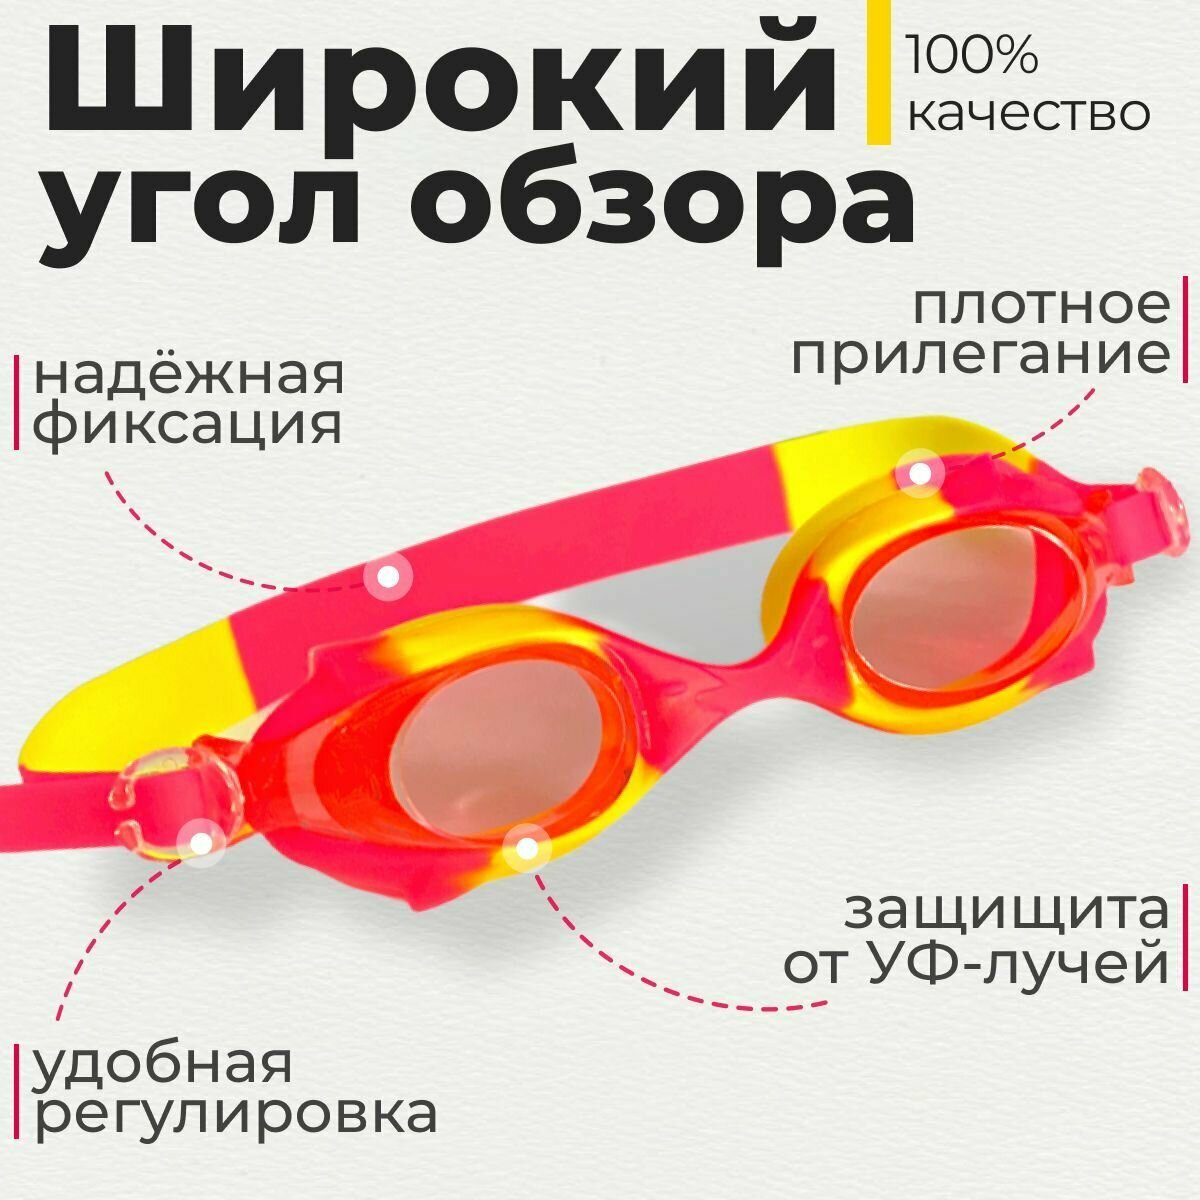 Очки для плавания универсальные плавательные детские подростковые для бассейна